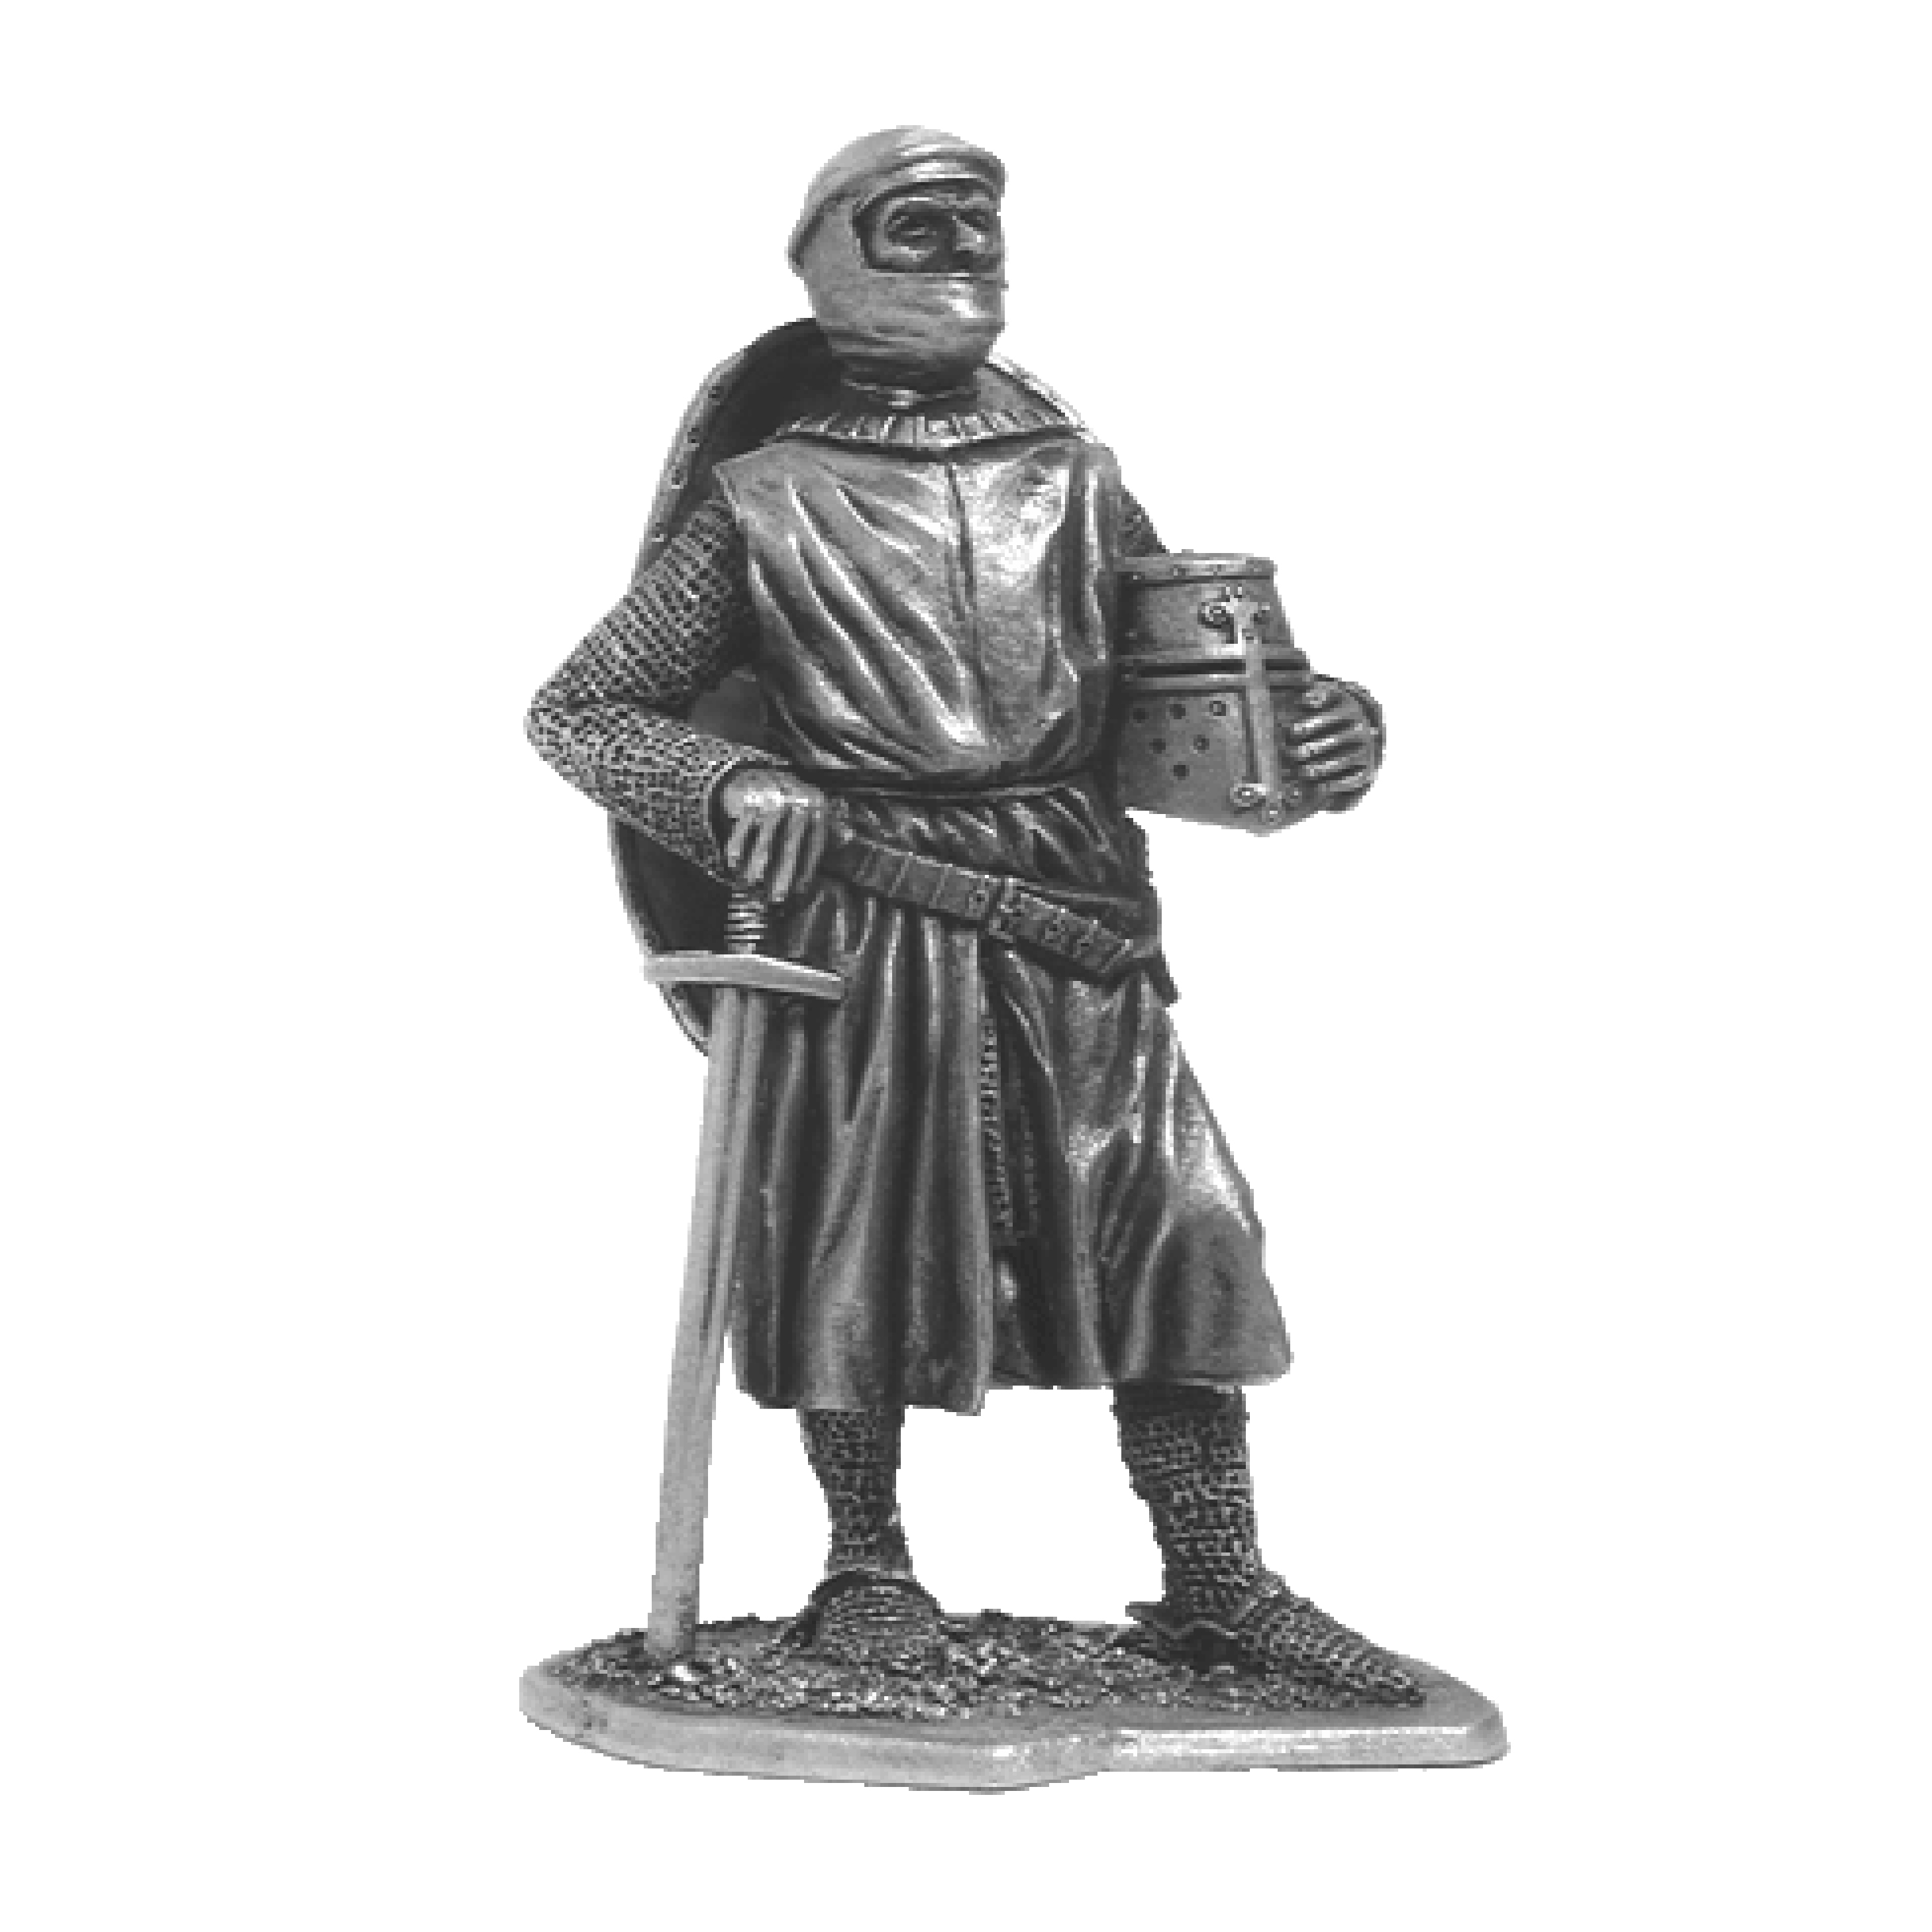 European knight, 13th century